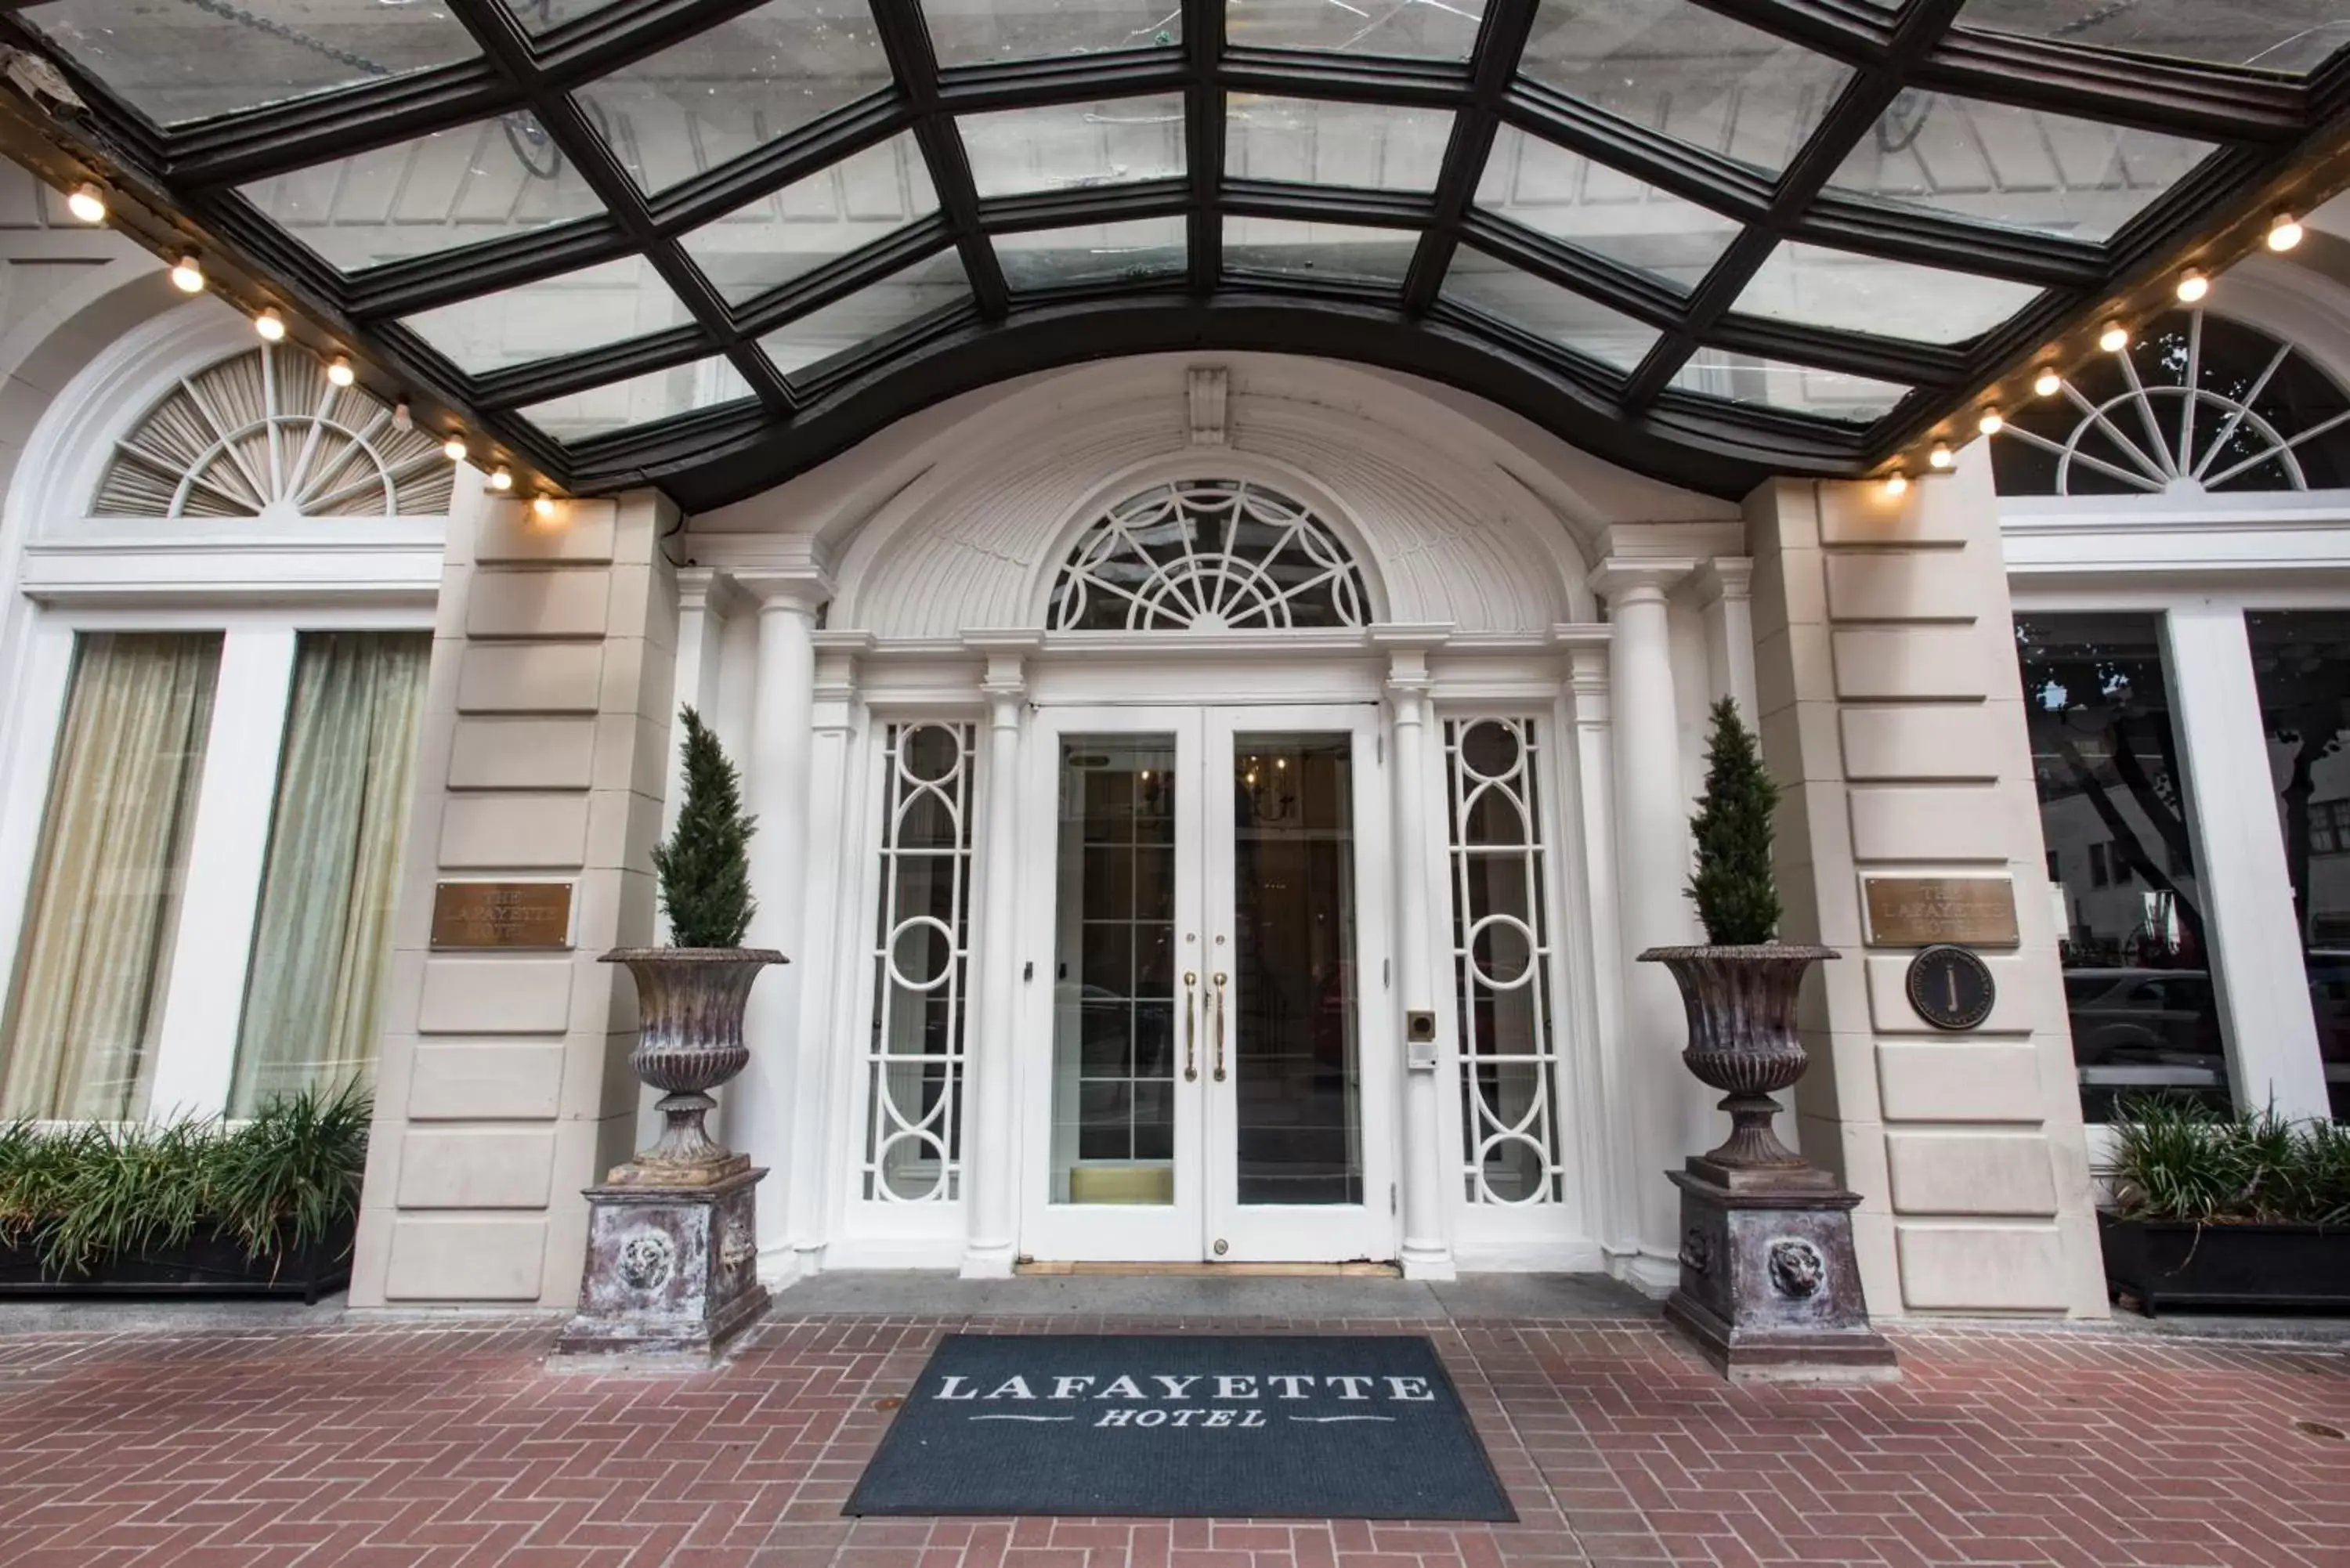 Facade/entrance in Lafayette Hotel by LuxUrban